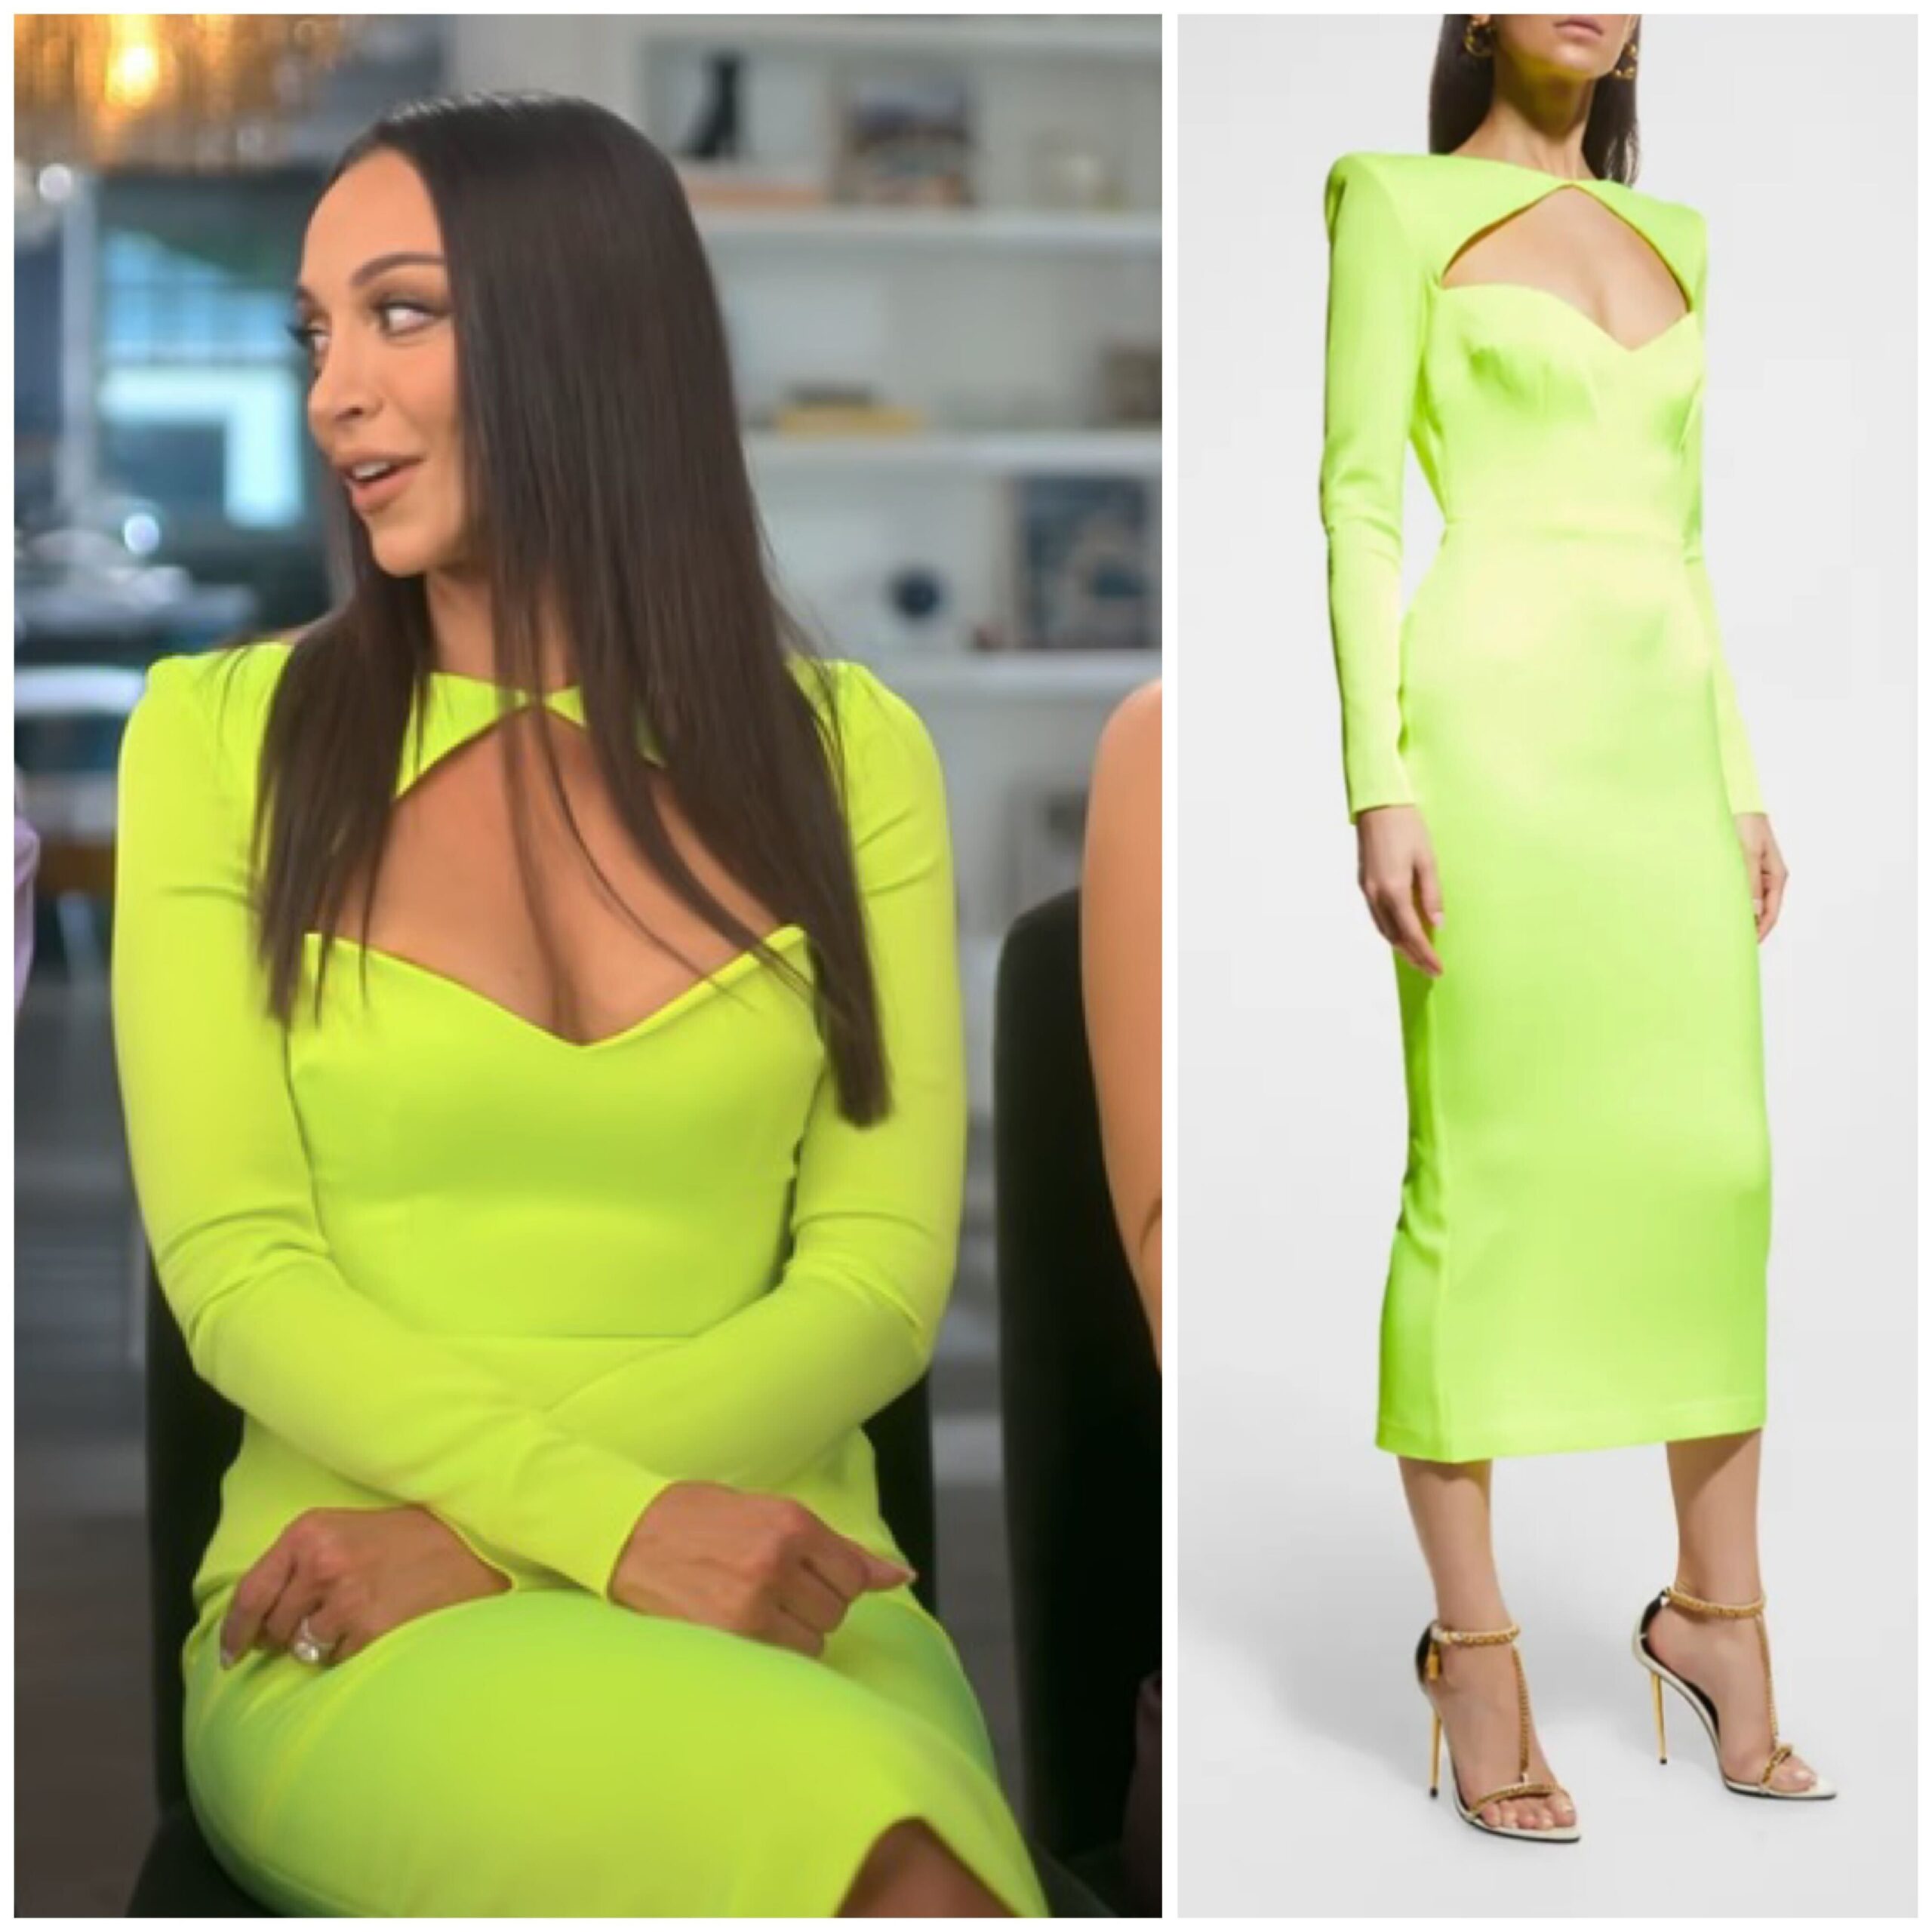 Farrah Aldjurie's Neon Yellow Cutout Confessional Dress